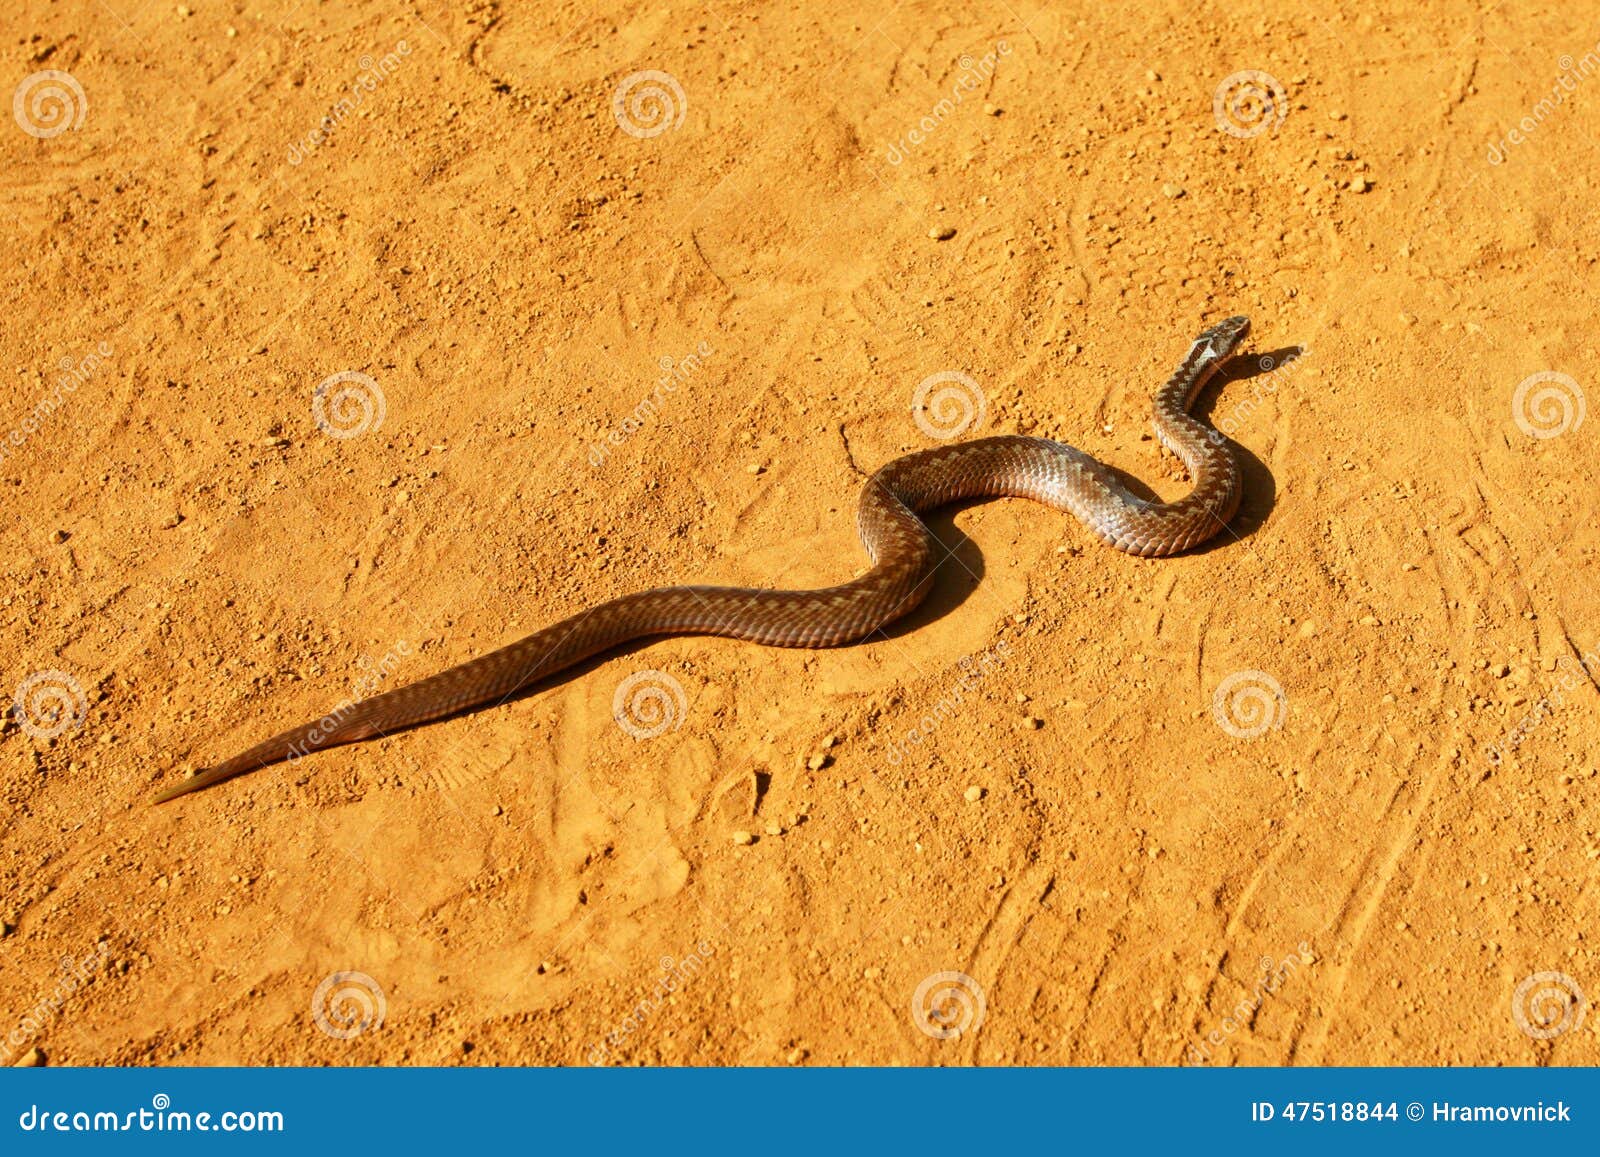 响尾蛇在沙漠 库存图片. 图片 包括有 有毒, 蛇蝎, 西部, 毒液, 通配, 爬行动物, 本质, 岩石 - 31174707